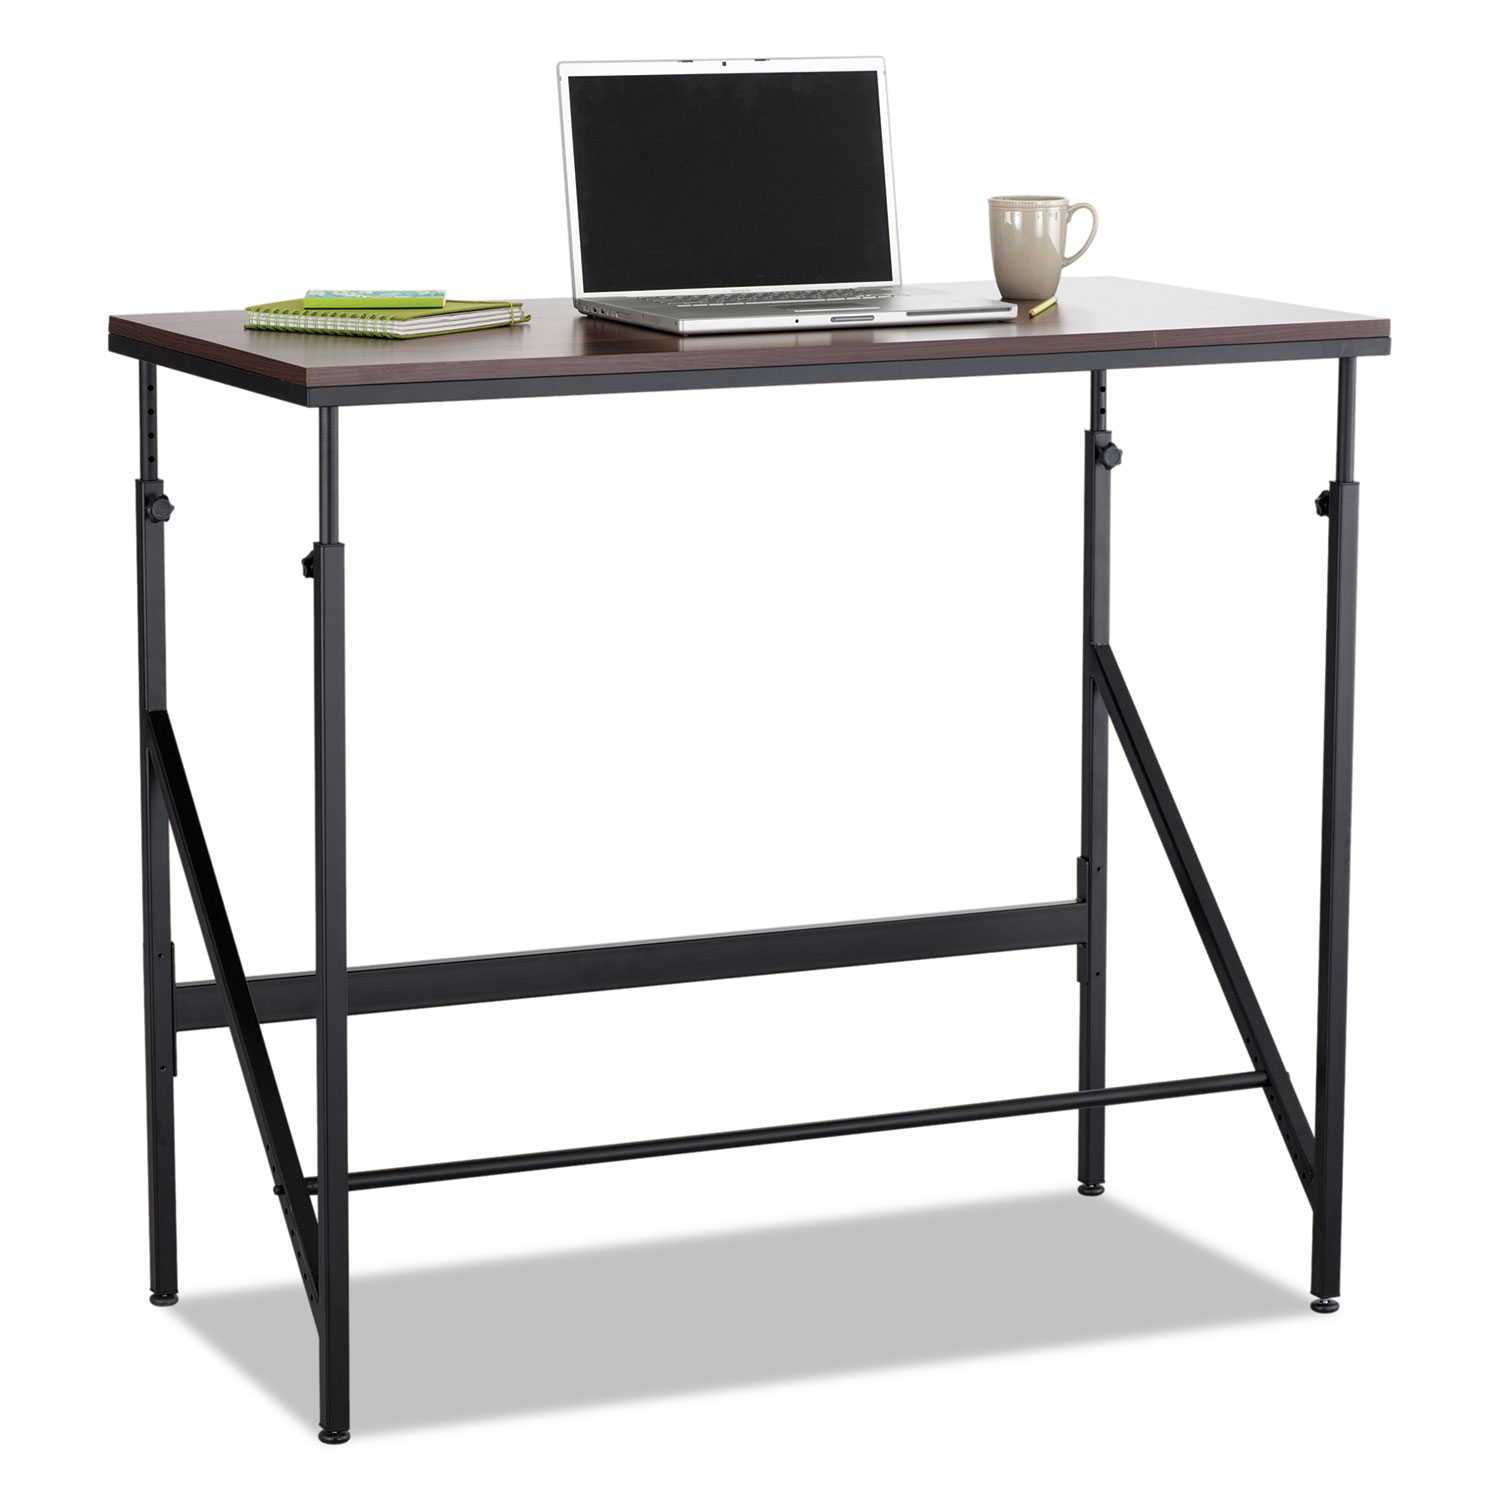 Standing Height Desk, 48w x 24d x 50h, Walnut/Black